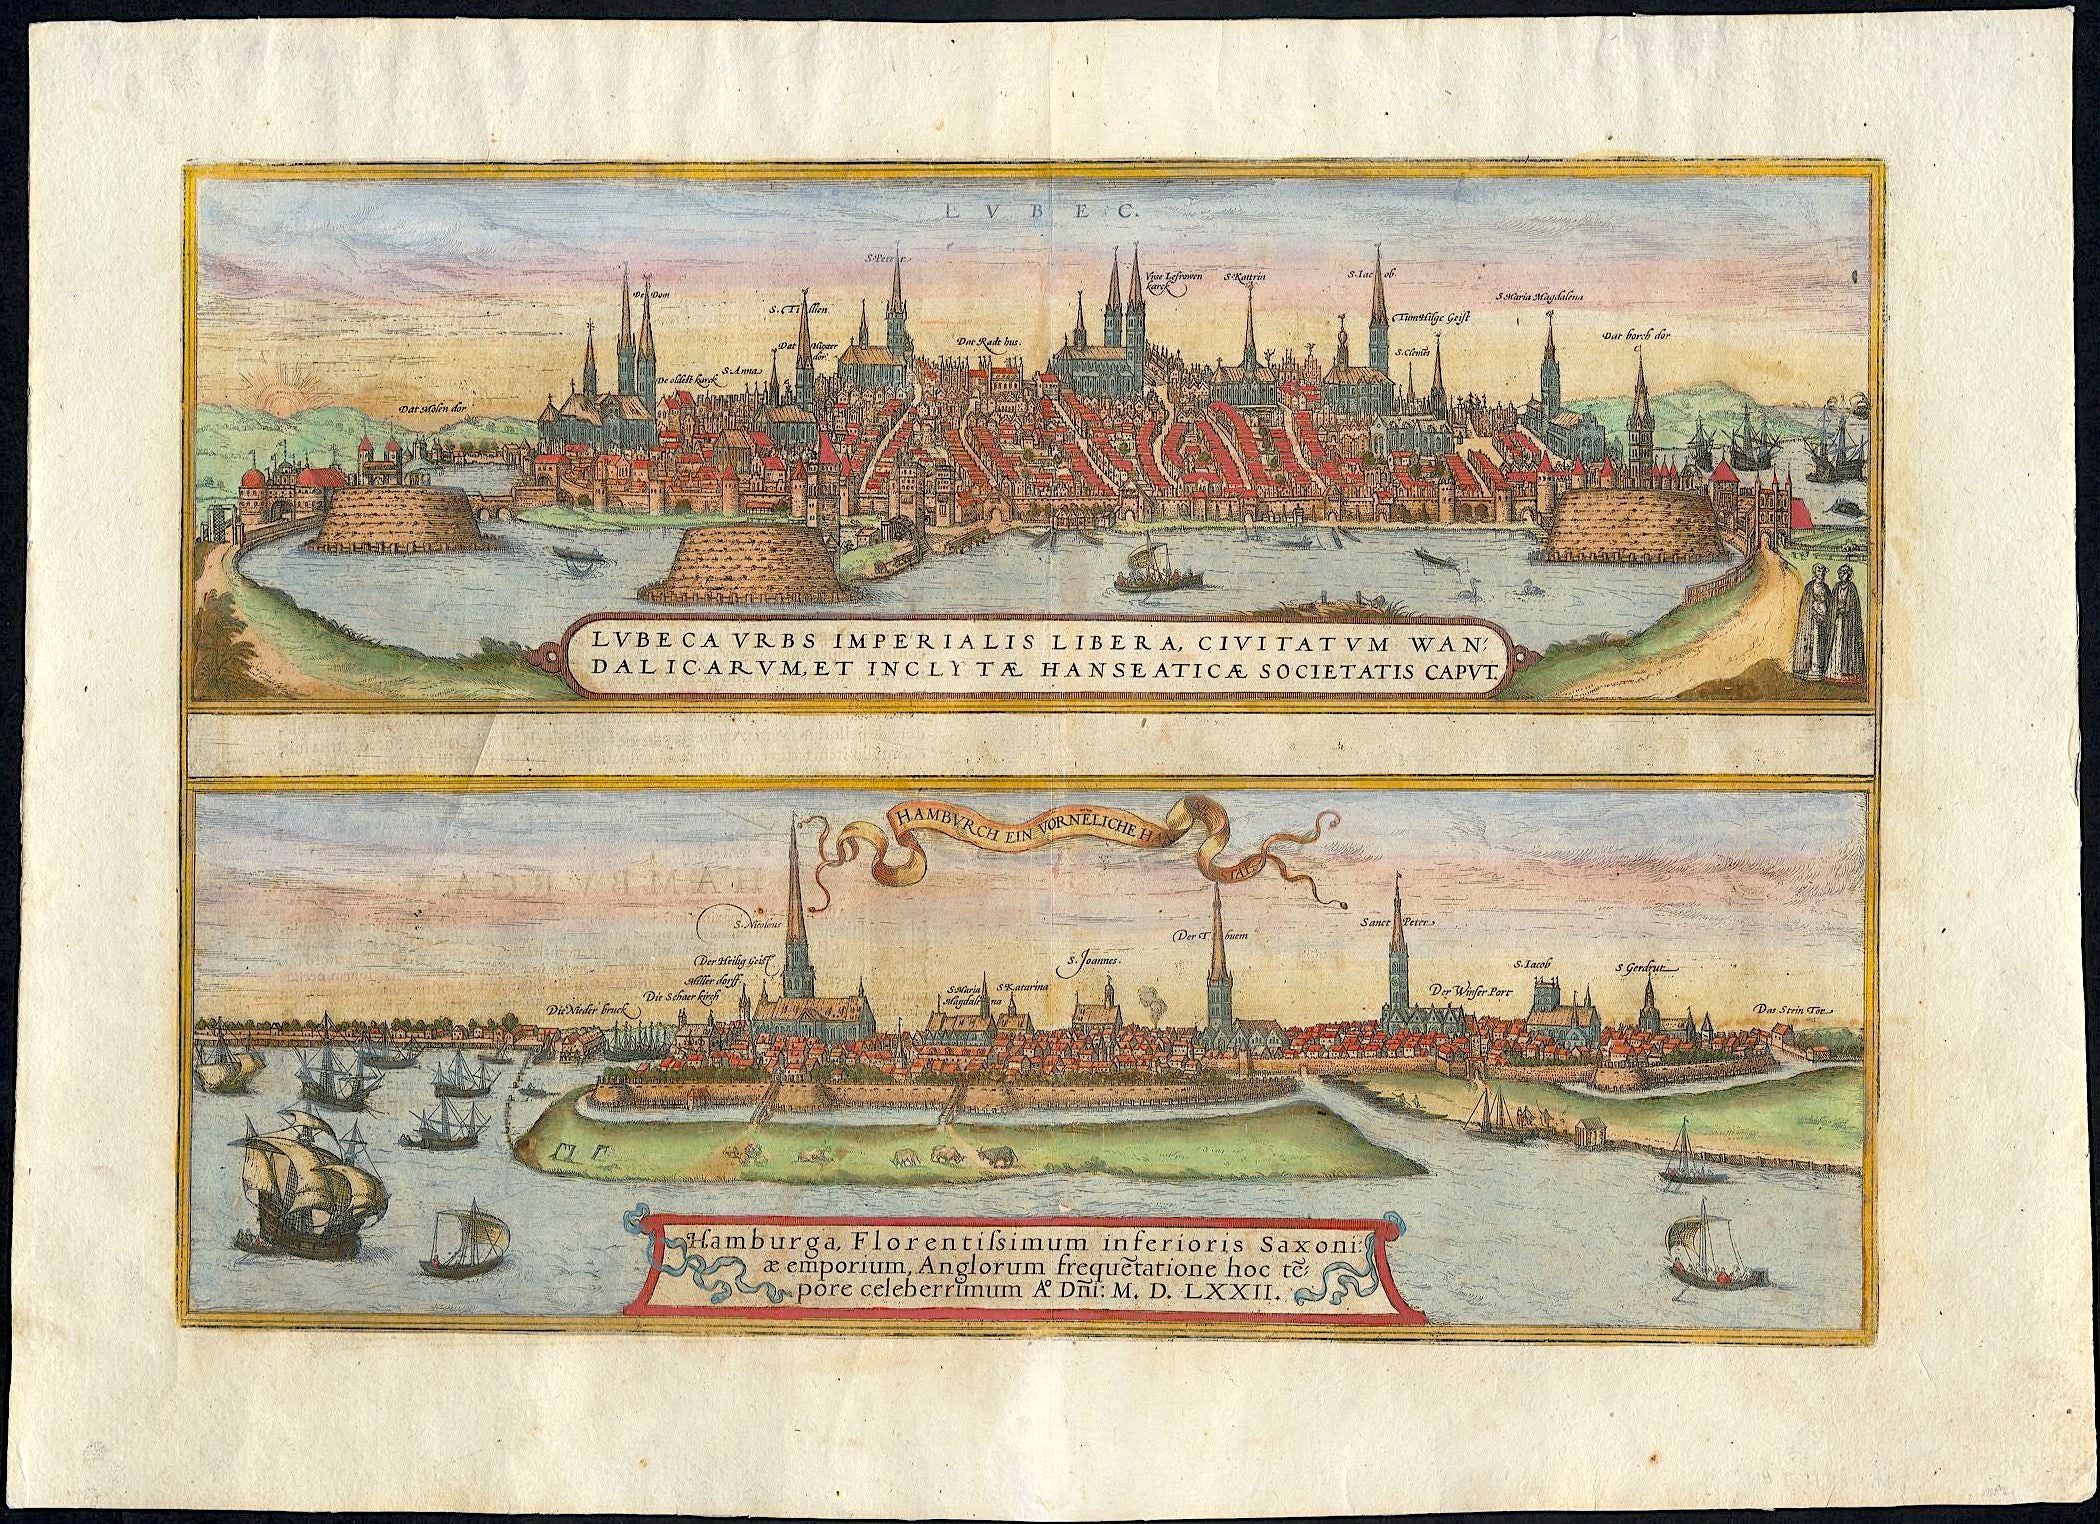 Hamburg um das Jahr 1575 von Georg Braun & Frans Hogenberg